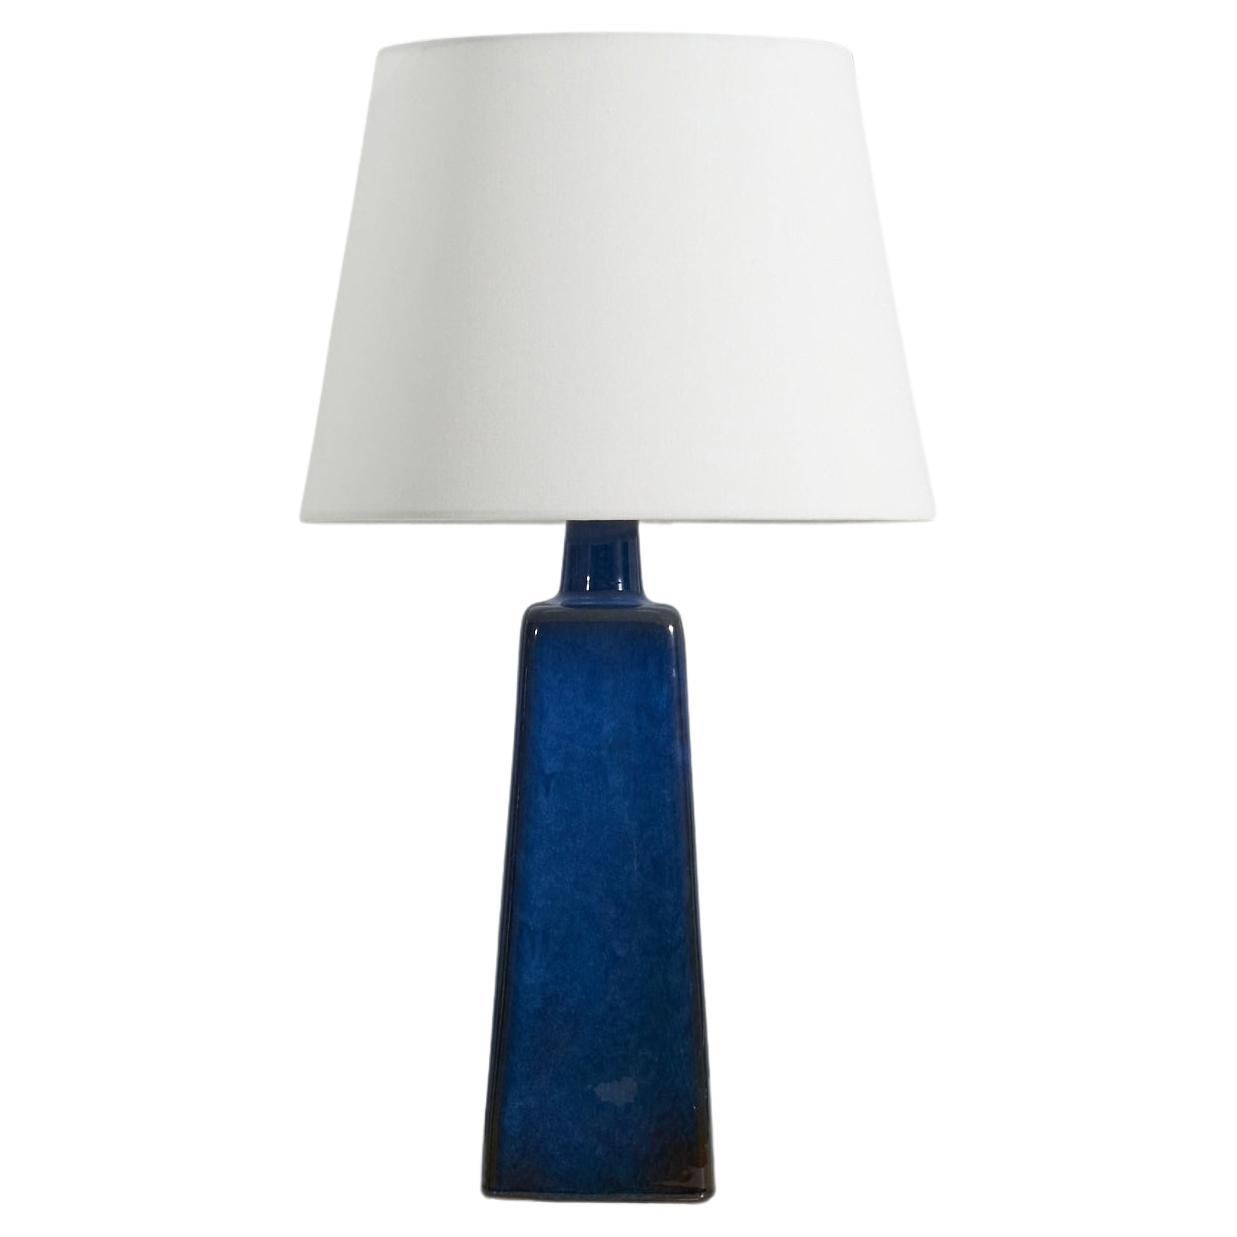  Sven Jonson, Table Lamp, Blue-Glazed Stoneware, Gustavsberg, Sweden, 1950s